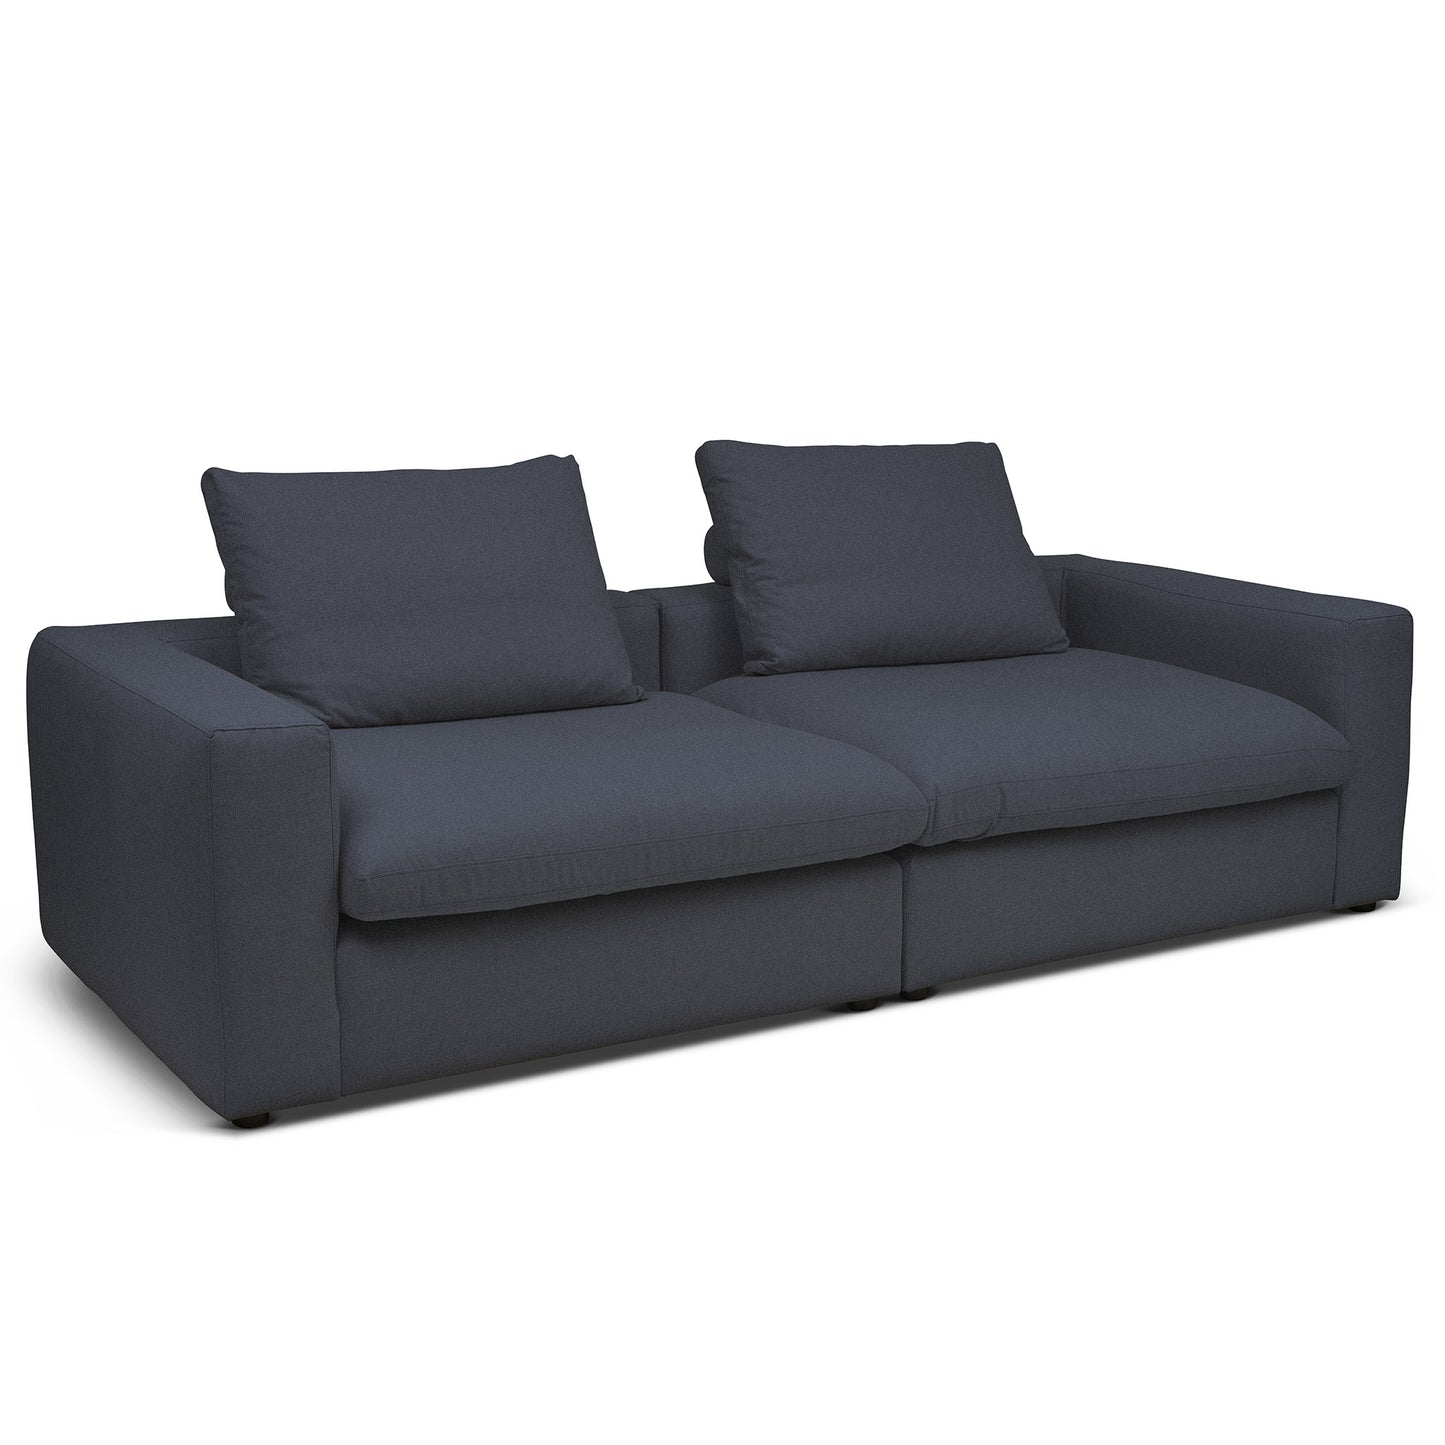 Extra djup 4-sits soffa i mörk blå färg. Palazzo är en byggbar modulsoffa